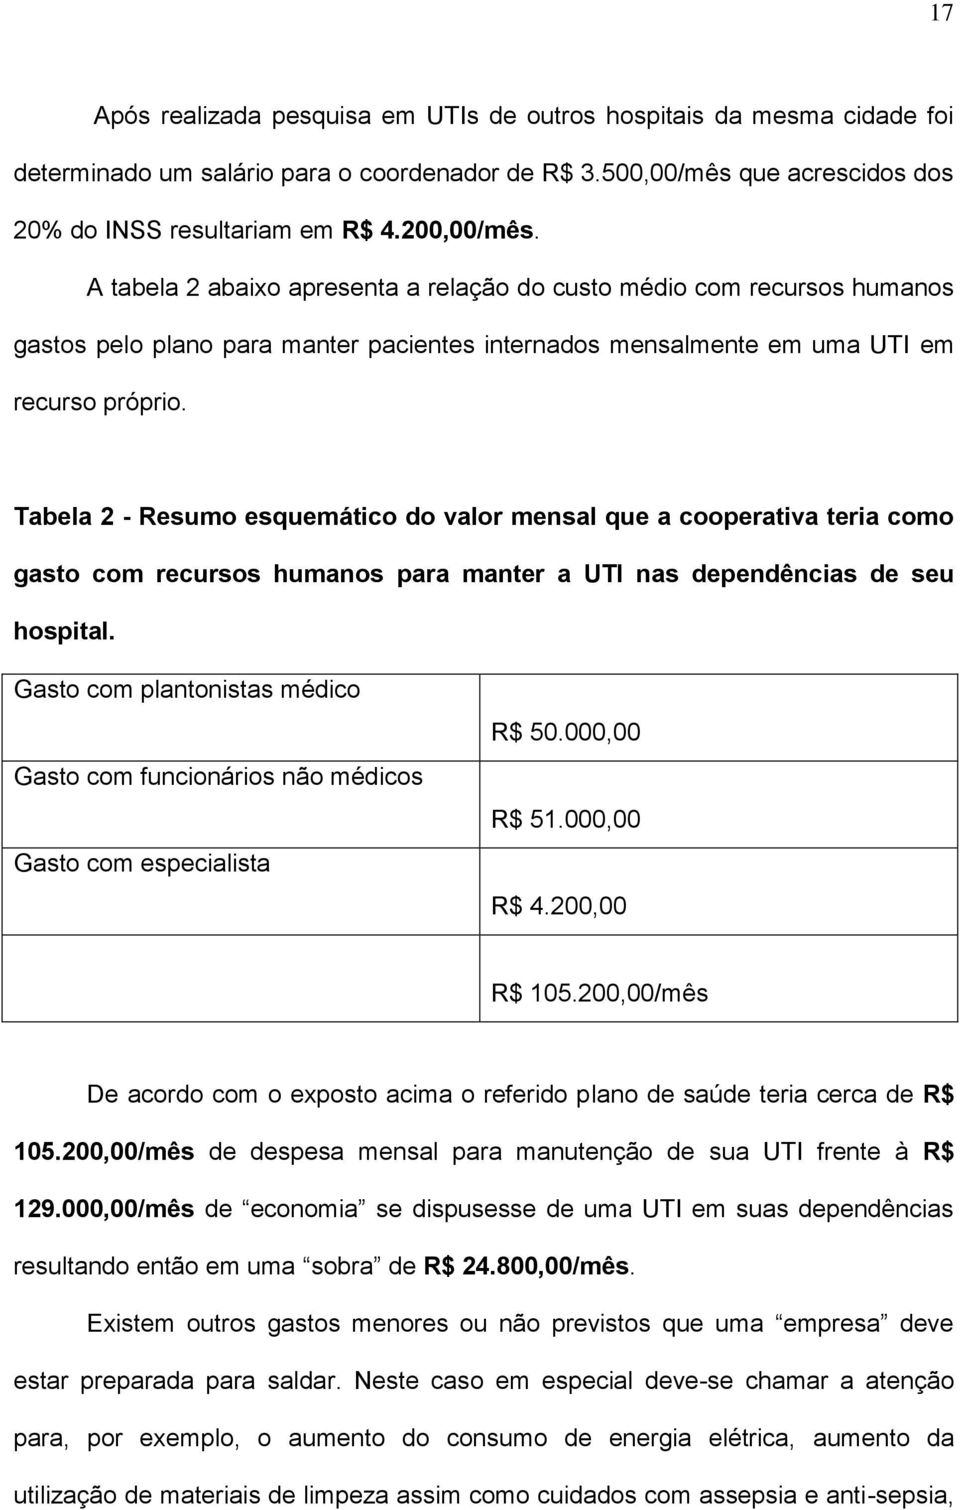 Tabela 2 - Resumo esquemático do valor mensal que a cooperativa teria como gasto com recursos humanos para manter a UTI nas dependências de seu hospital.